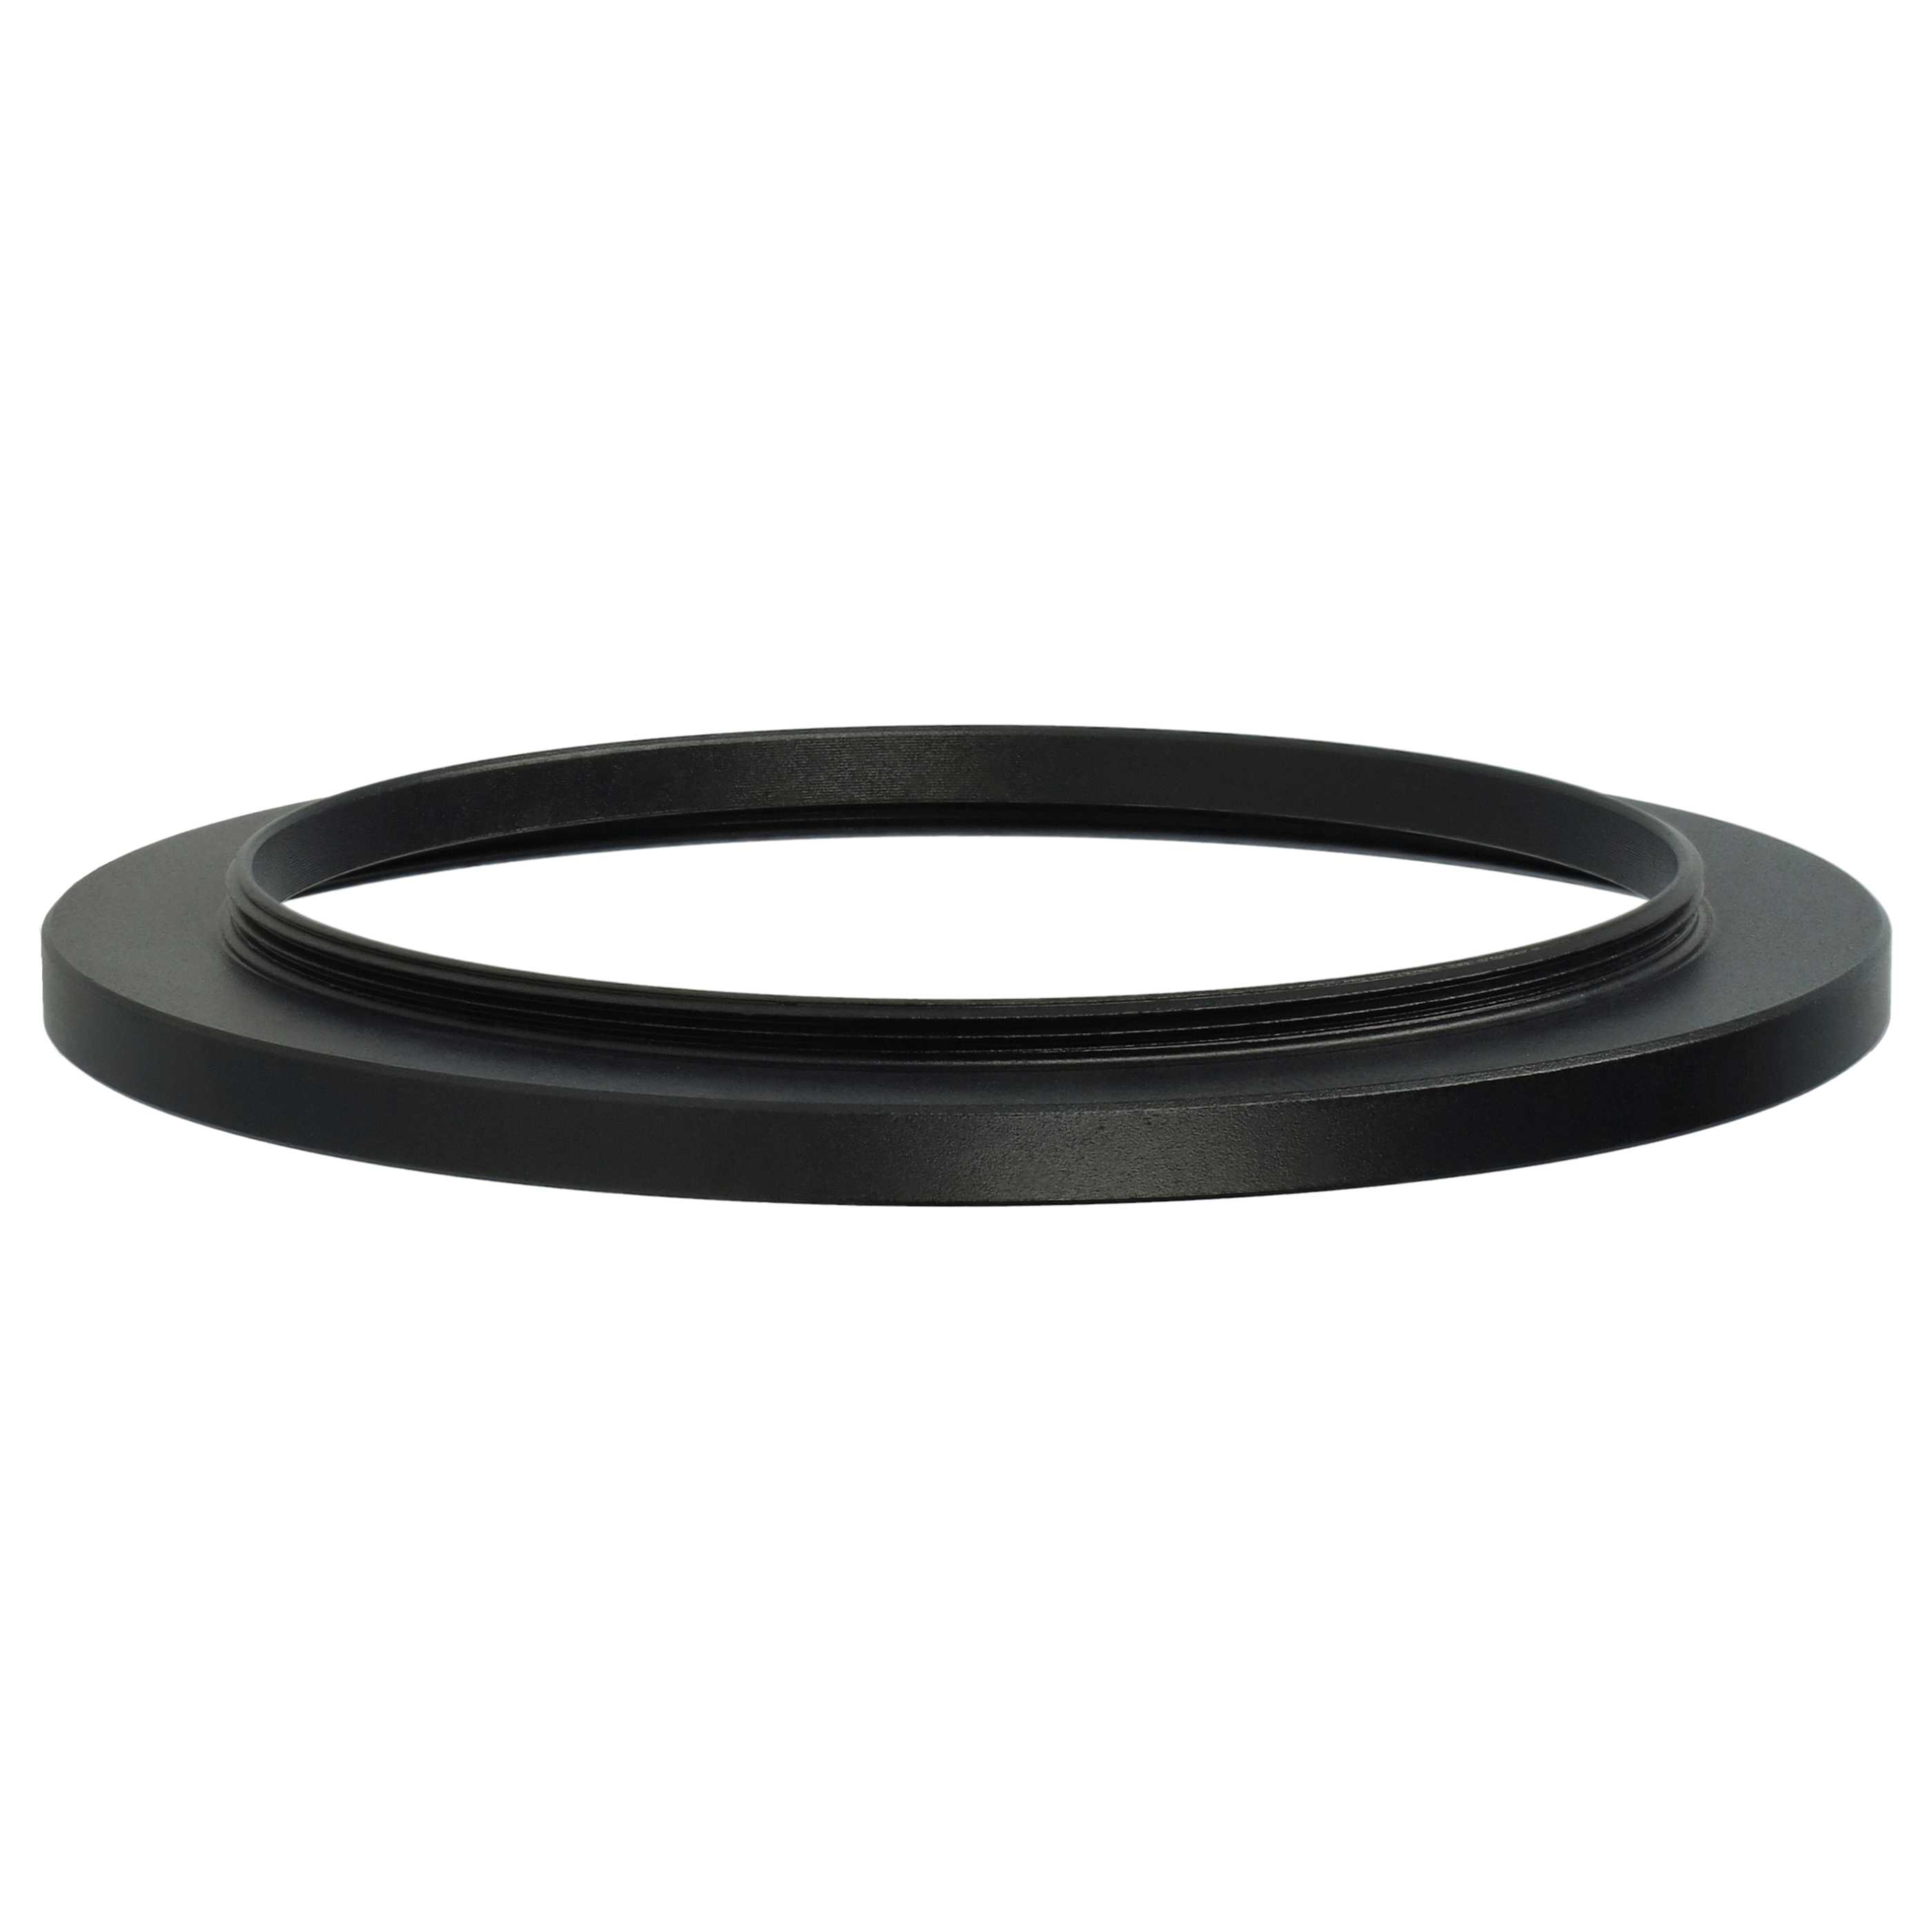 Step-Up-Ring Adapter 60 mm auf 72 mm passend für diverse Kamera-Objektive - Filteradapter